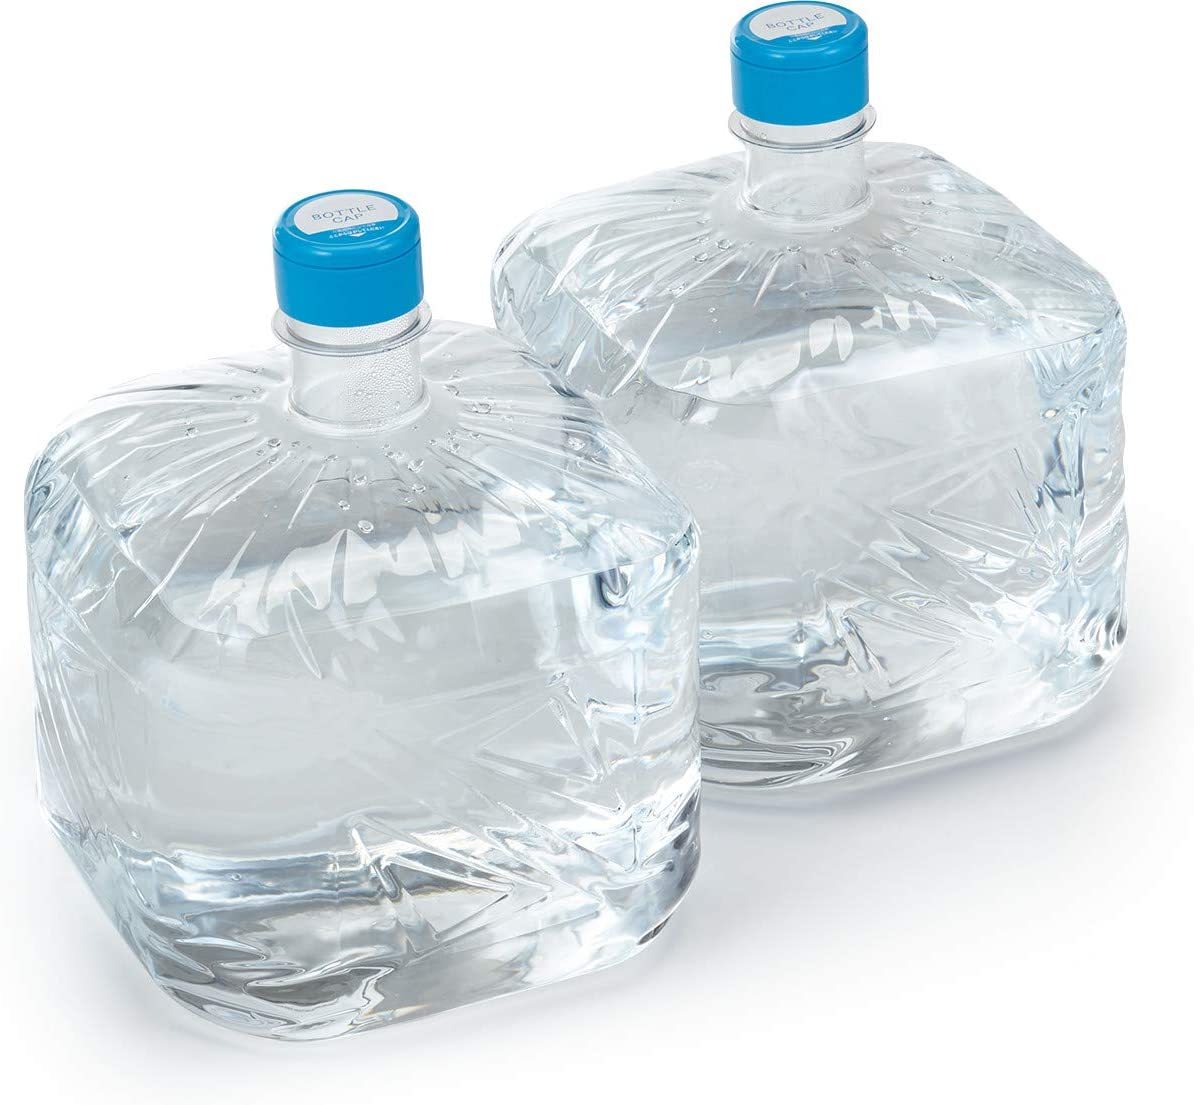  FRECIOUS富士 9.3L×2 天然水(フレシャス ウォーターサーバー用 水ボトル) 透明の画像1